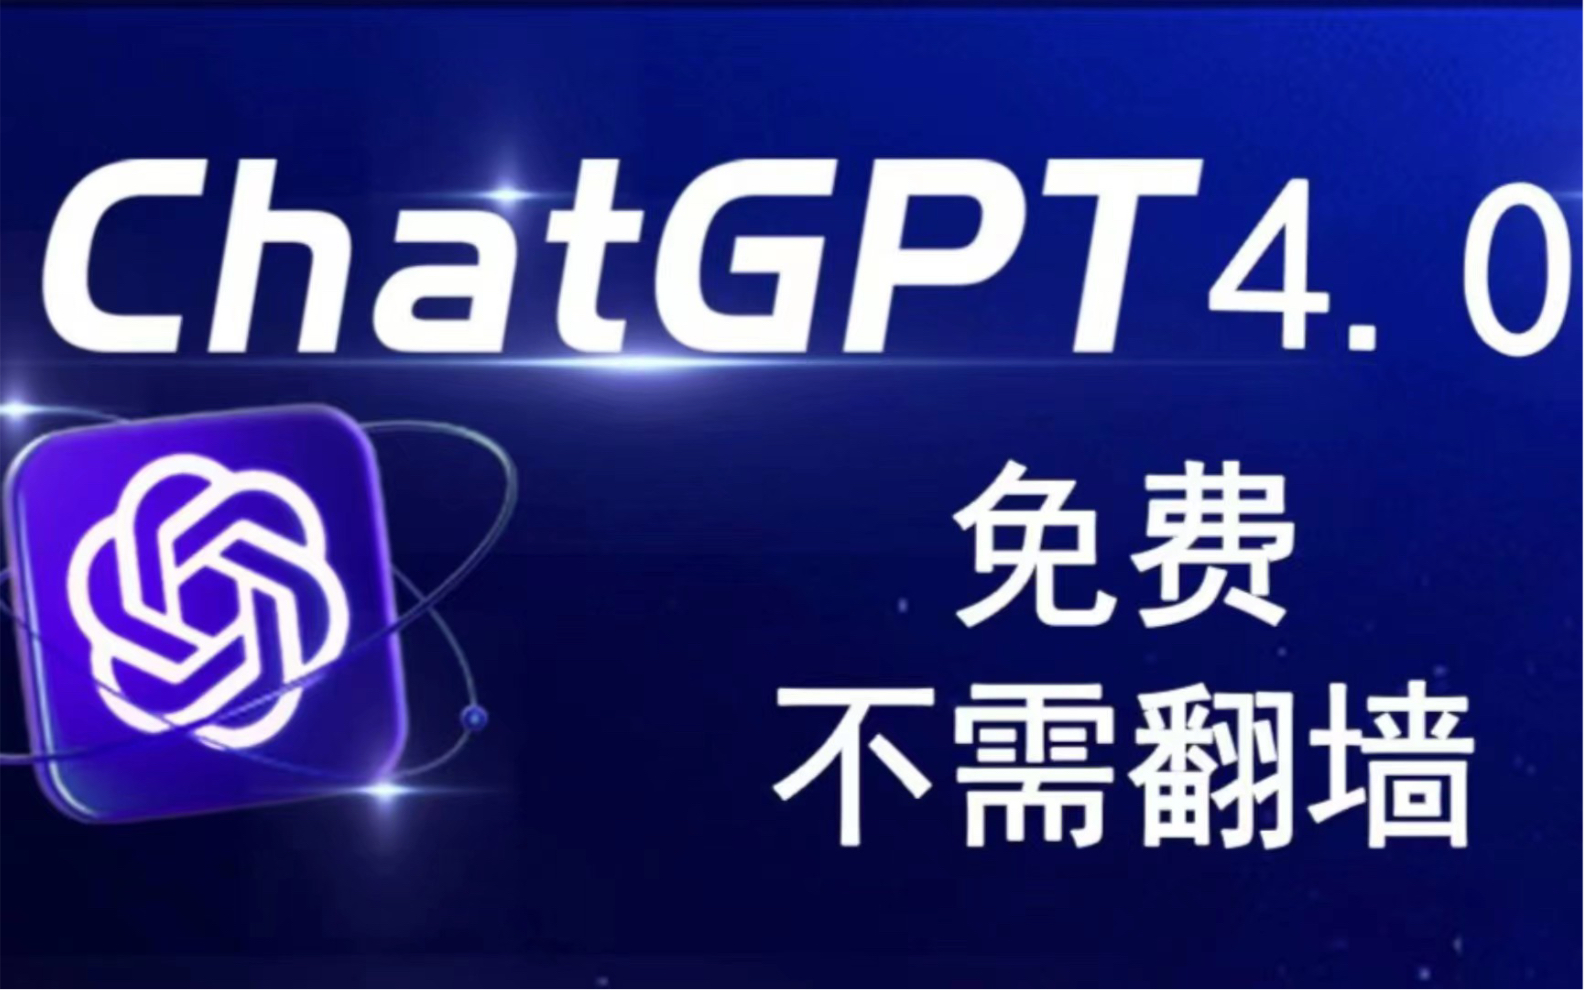 3月份最新ChatGPT来了,国内无限制免费使用教程。